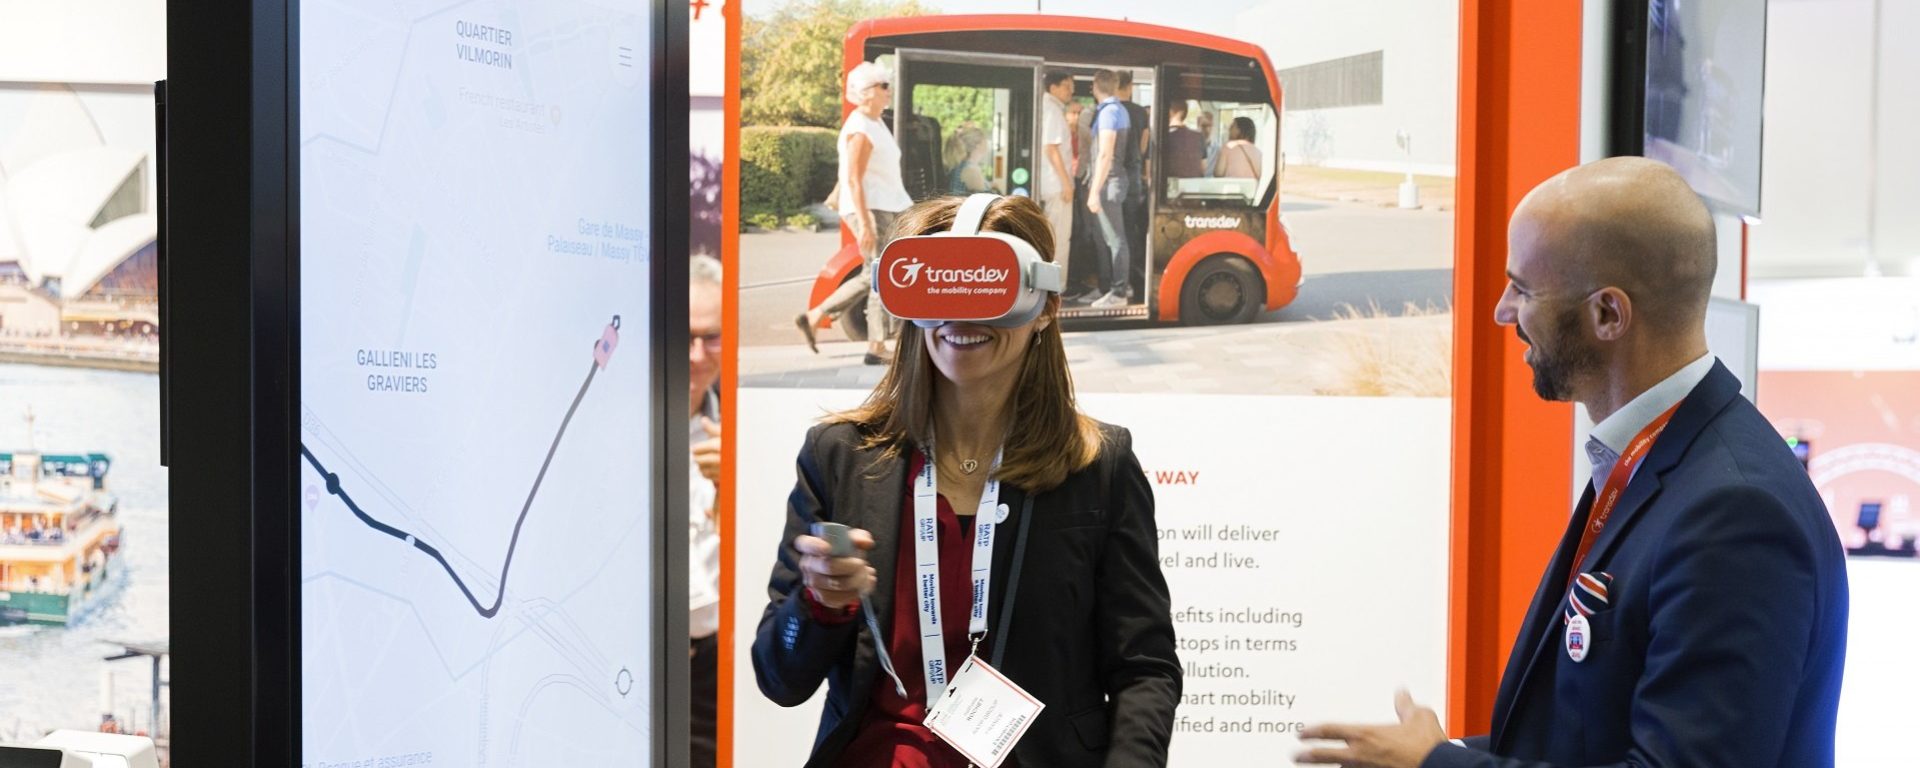 Transdev booth UITP 2019 Stockholm Stand salon animation casque réalité virtuelle mobilité